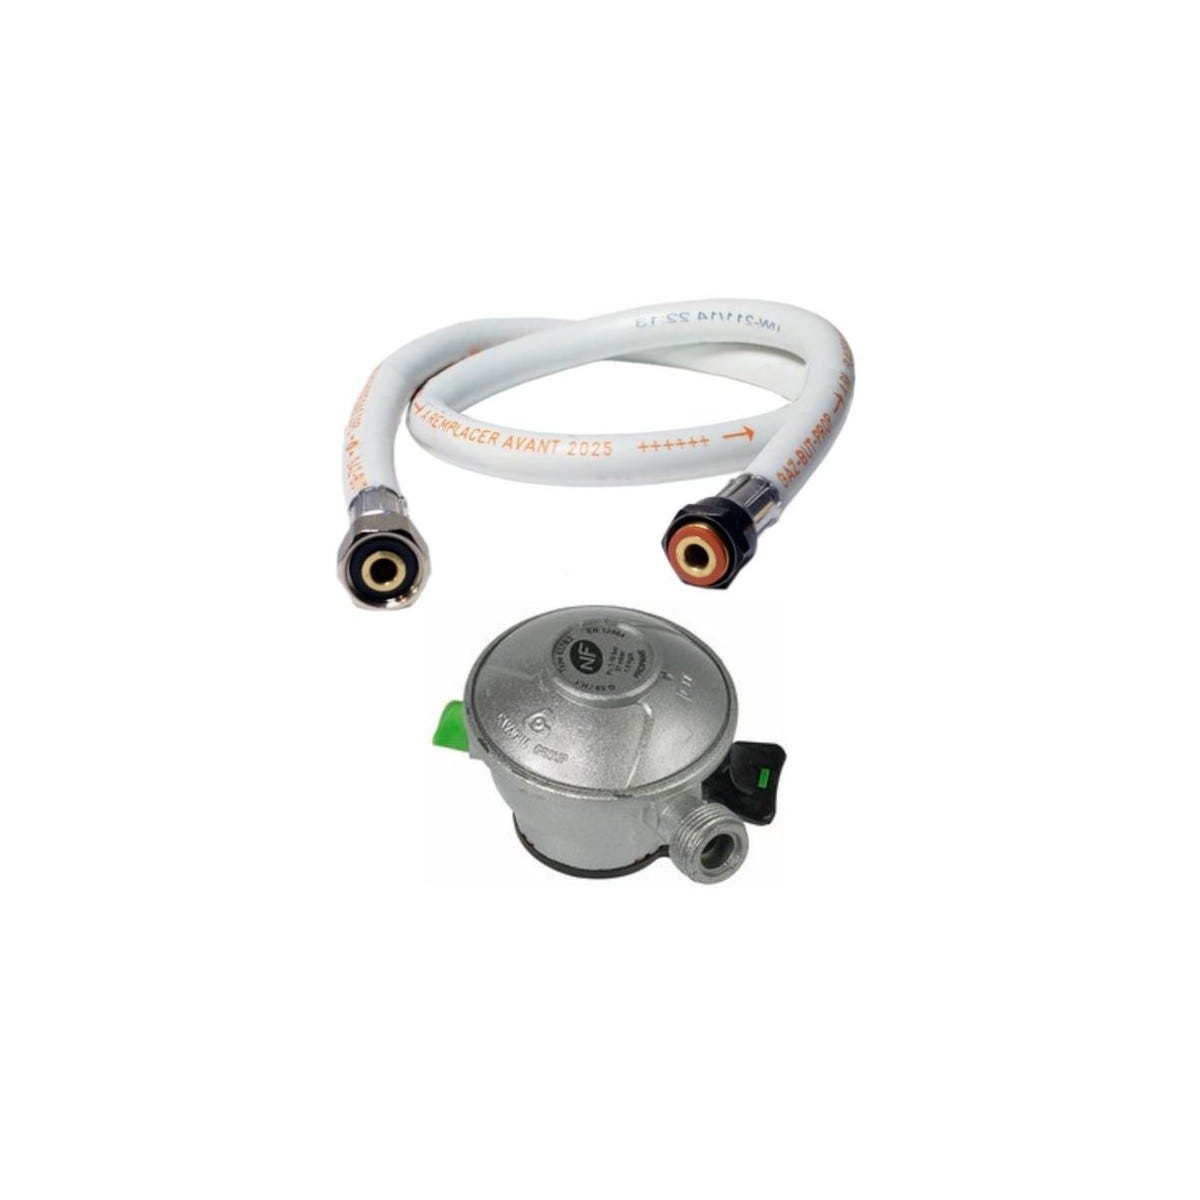 Pack tuyau gaz flexible 1.50 m + Détendeur Butane à clipser Quick-On Valve Diam 27mm BUTAGAZ Avec Sécurité stop gaz 0